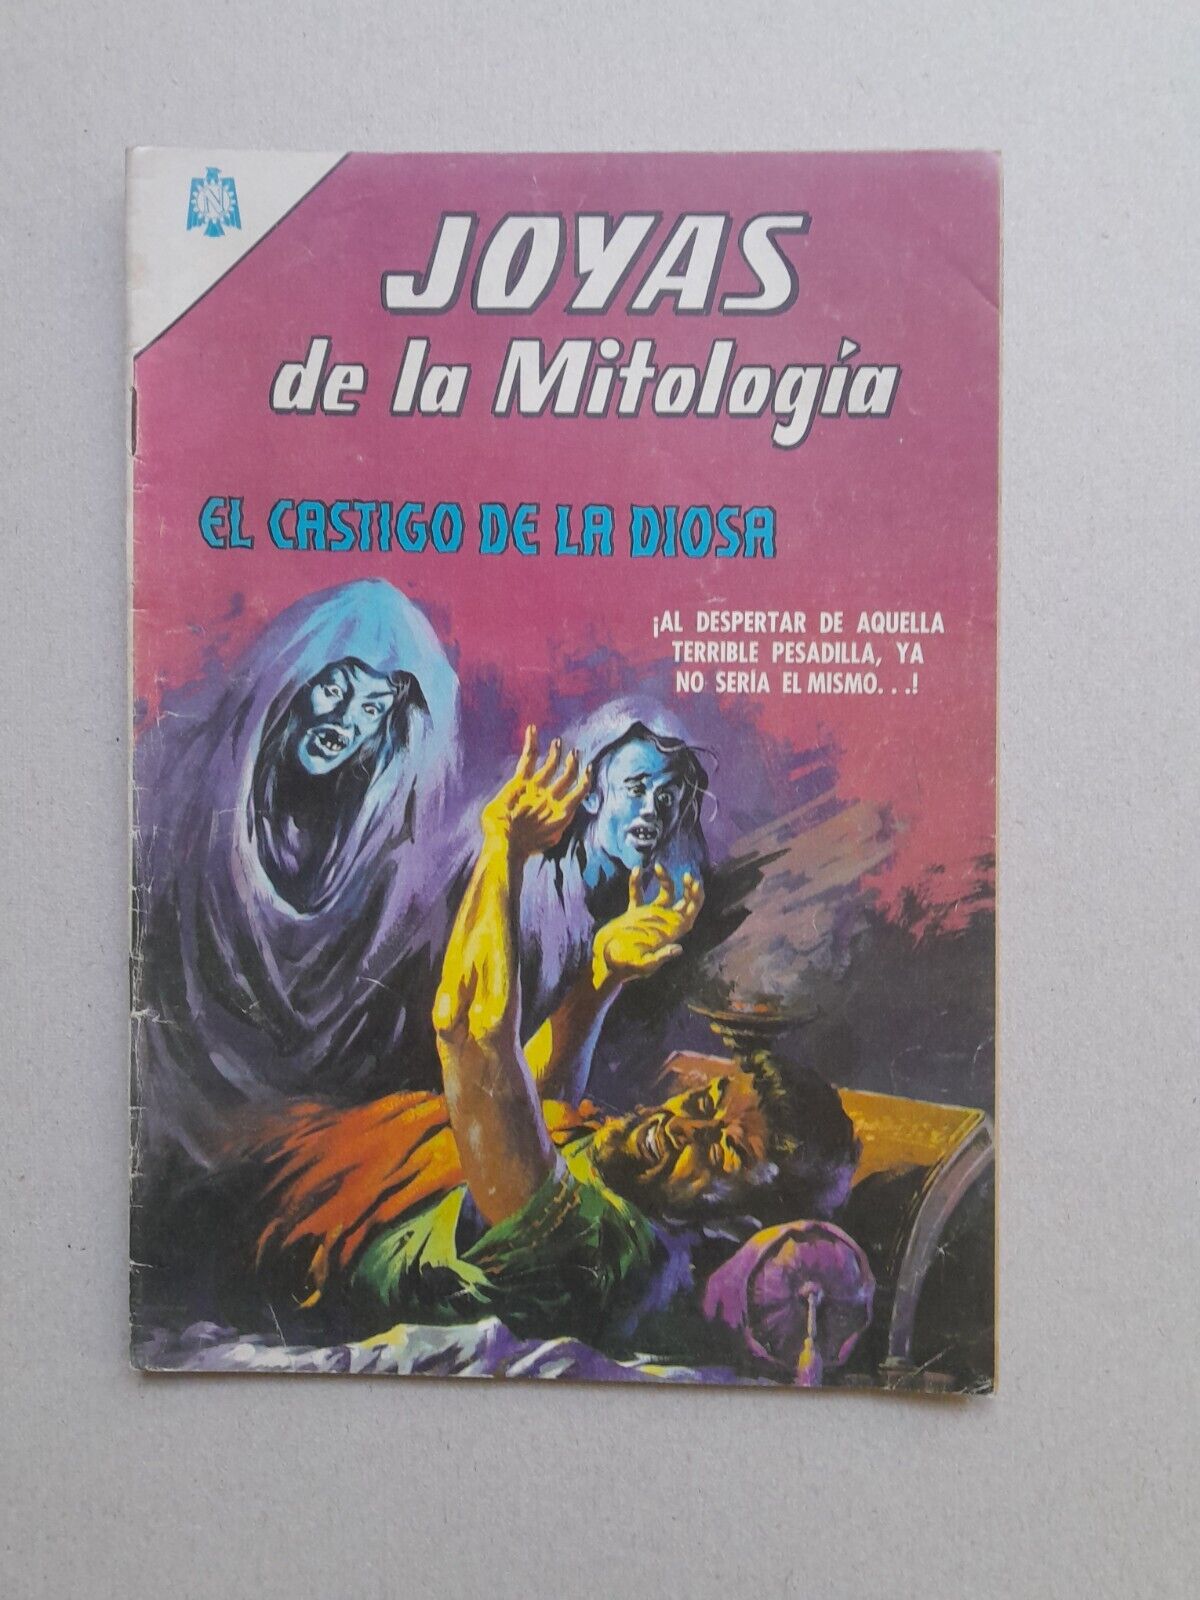 JOYAS DE LA MITOLOGIA #42 - EL CASTIGO DE LA DIOSA -COMIC IN SPANISH- NOVARO